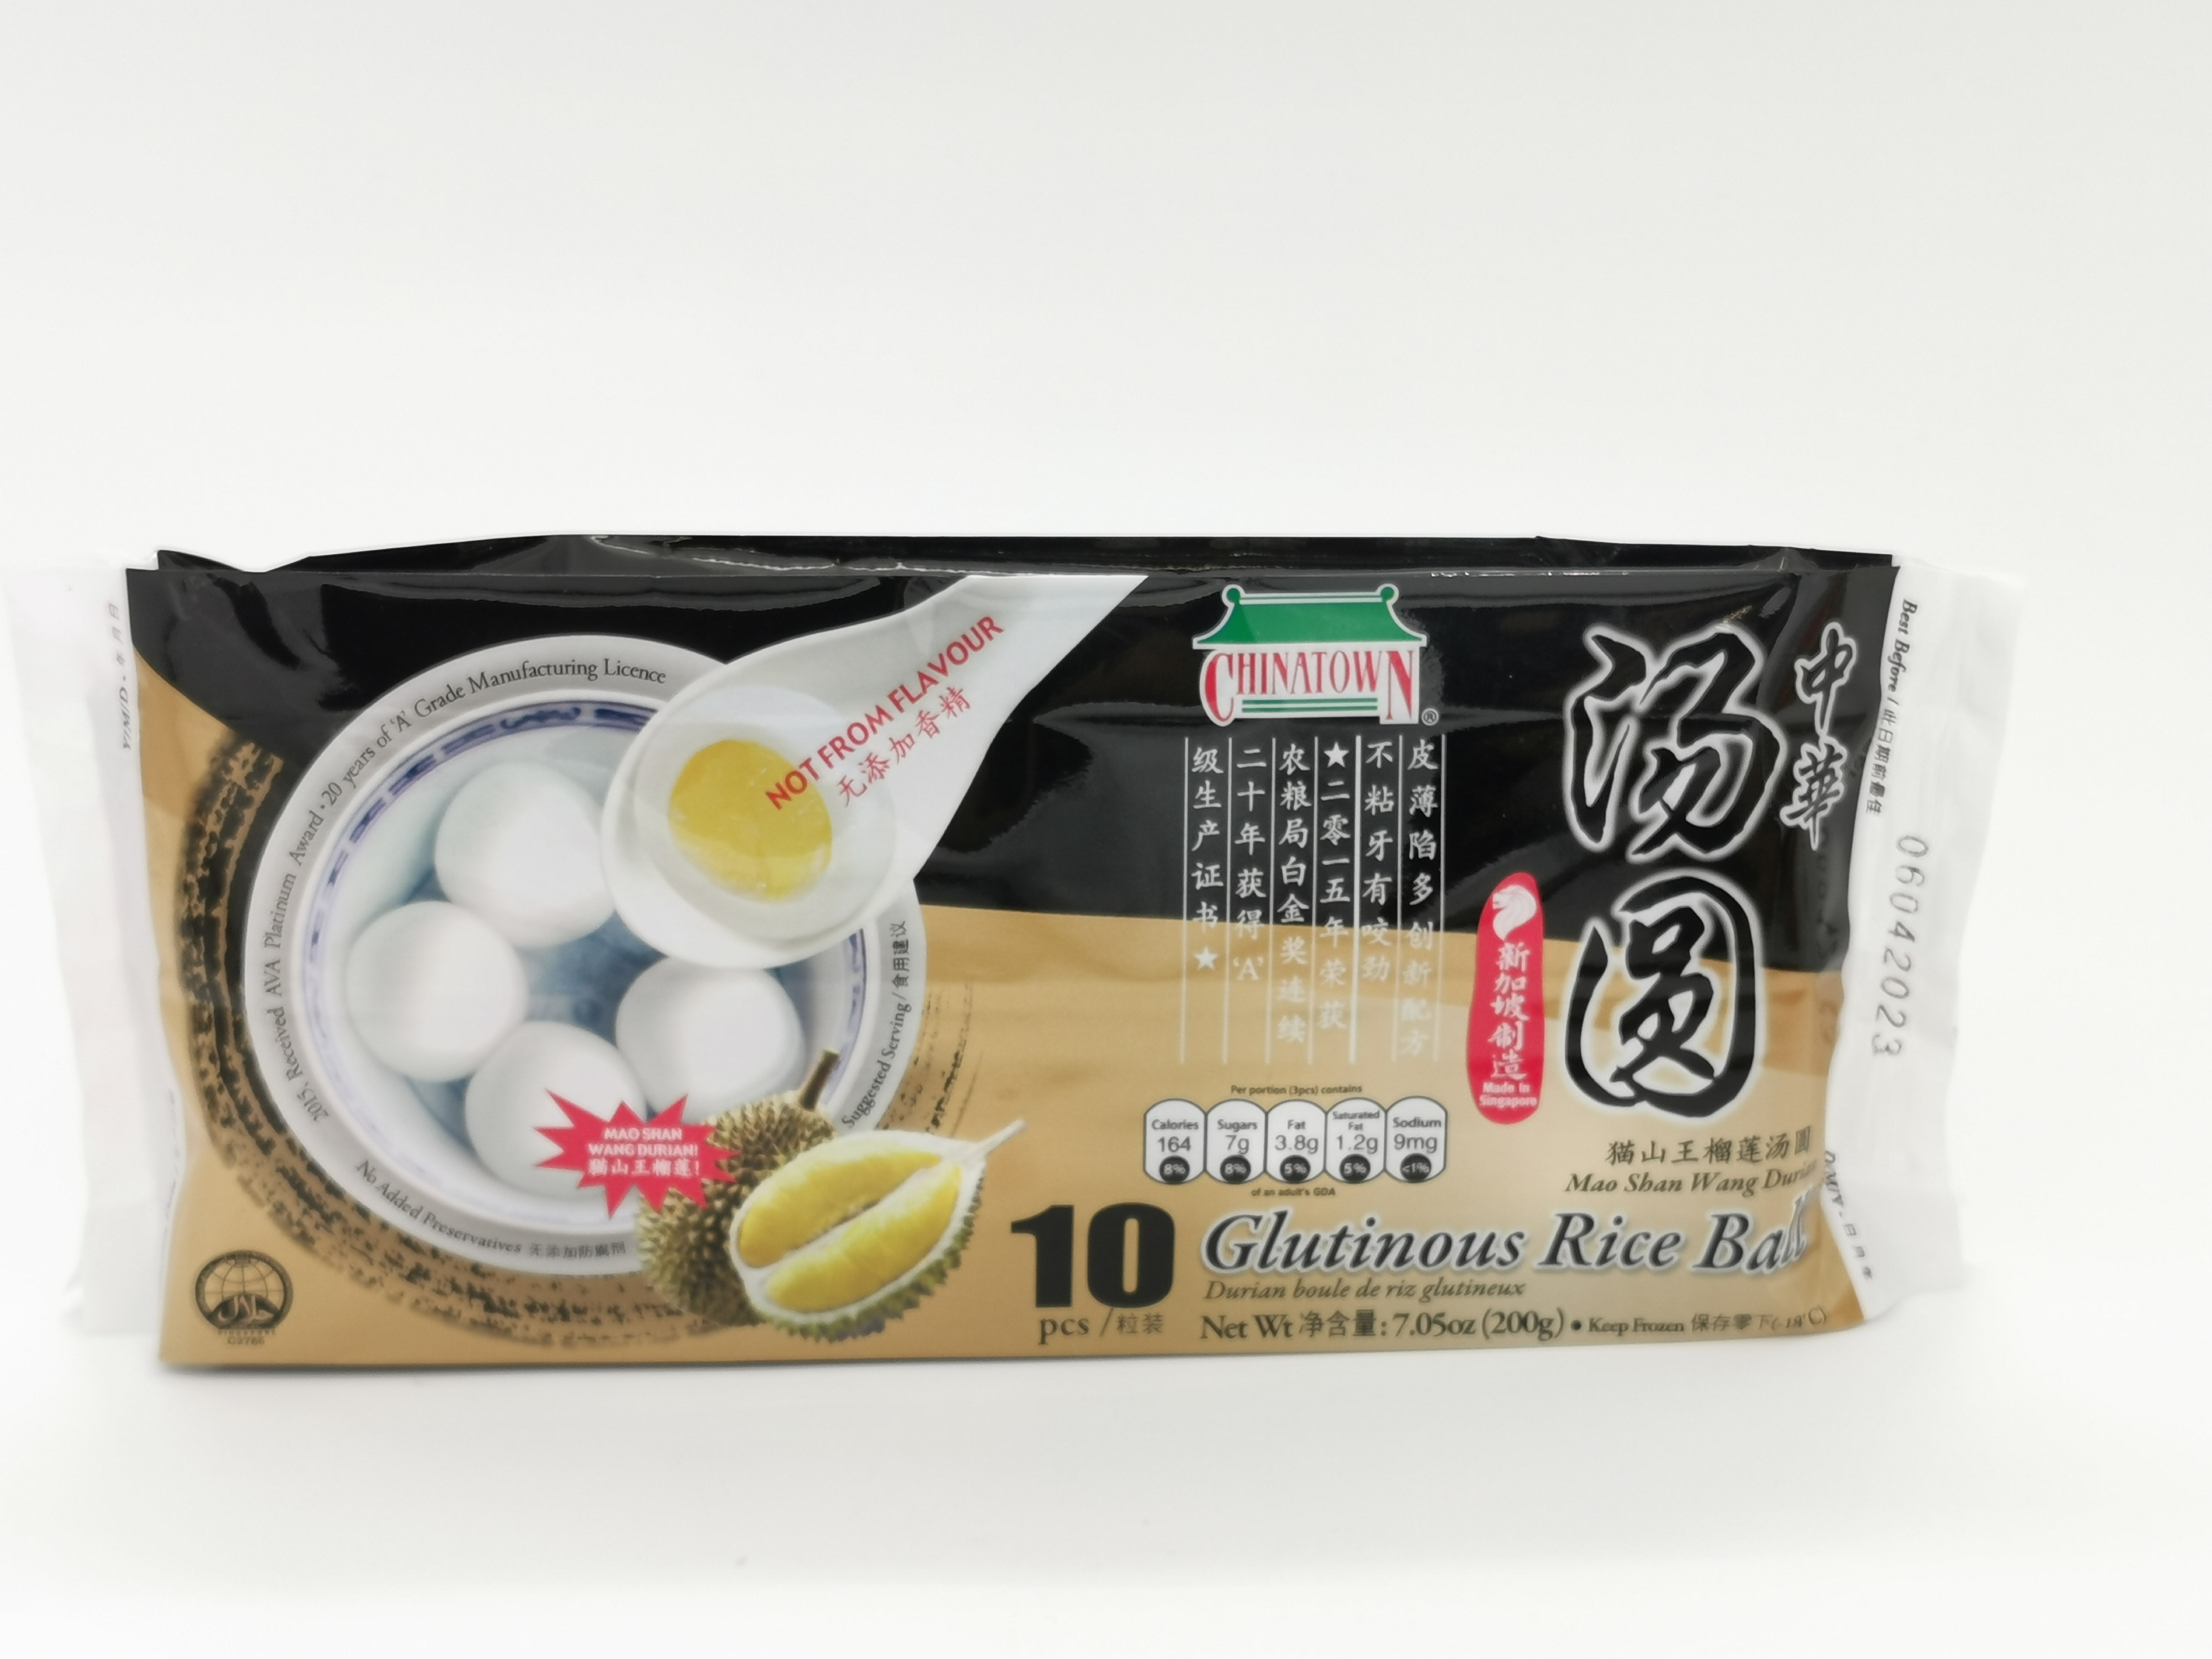 Chinatown Durian Rice Ball 200g